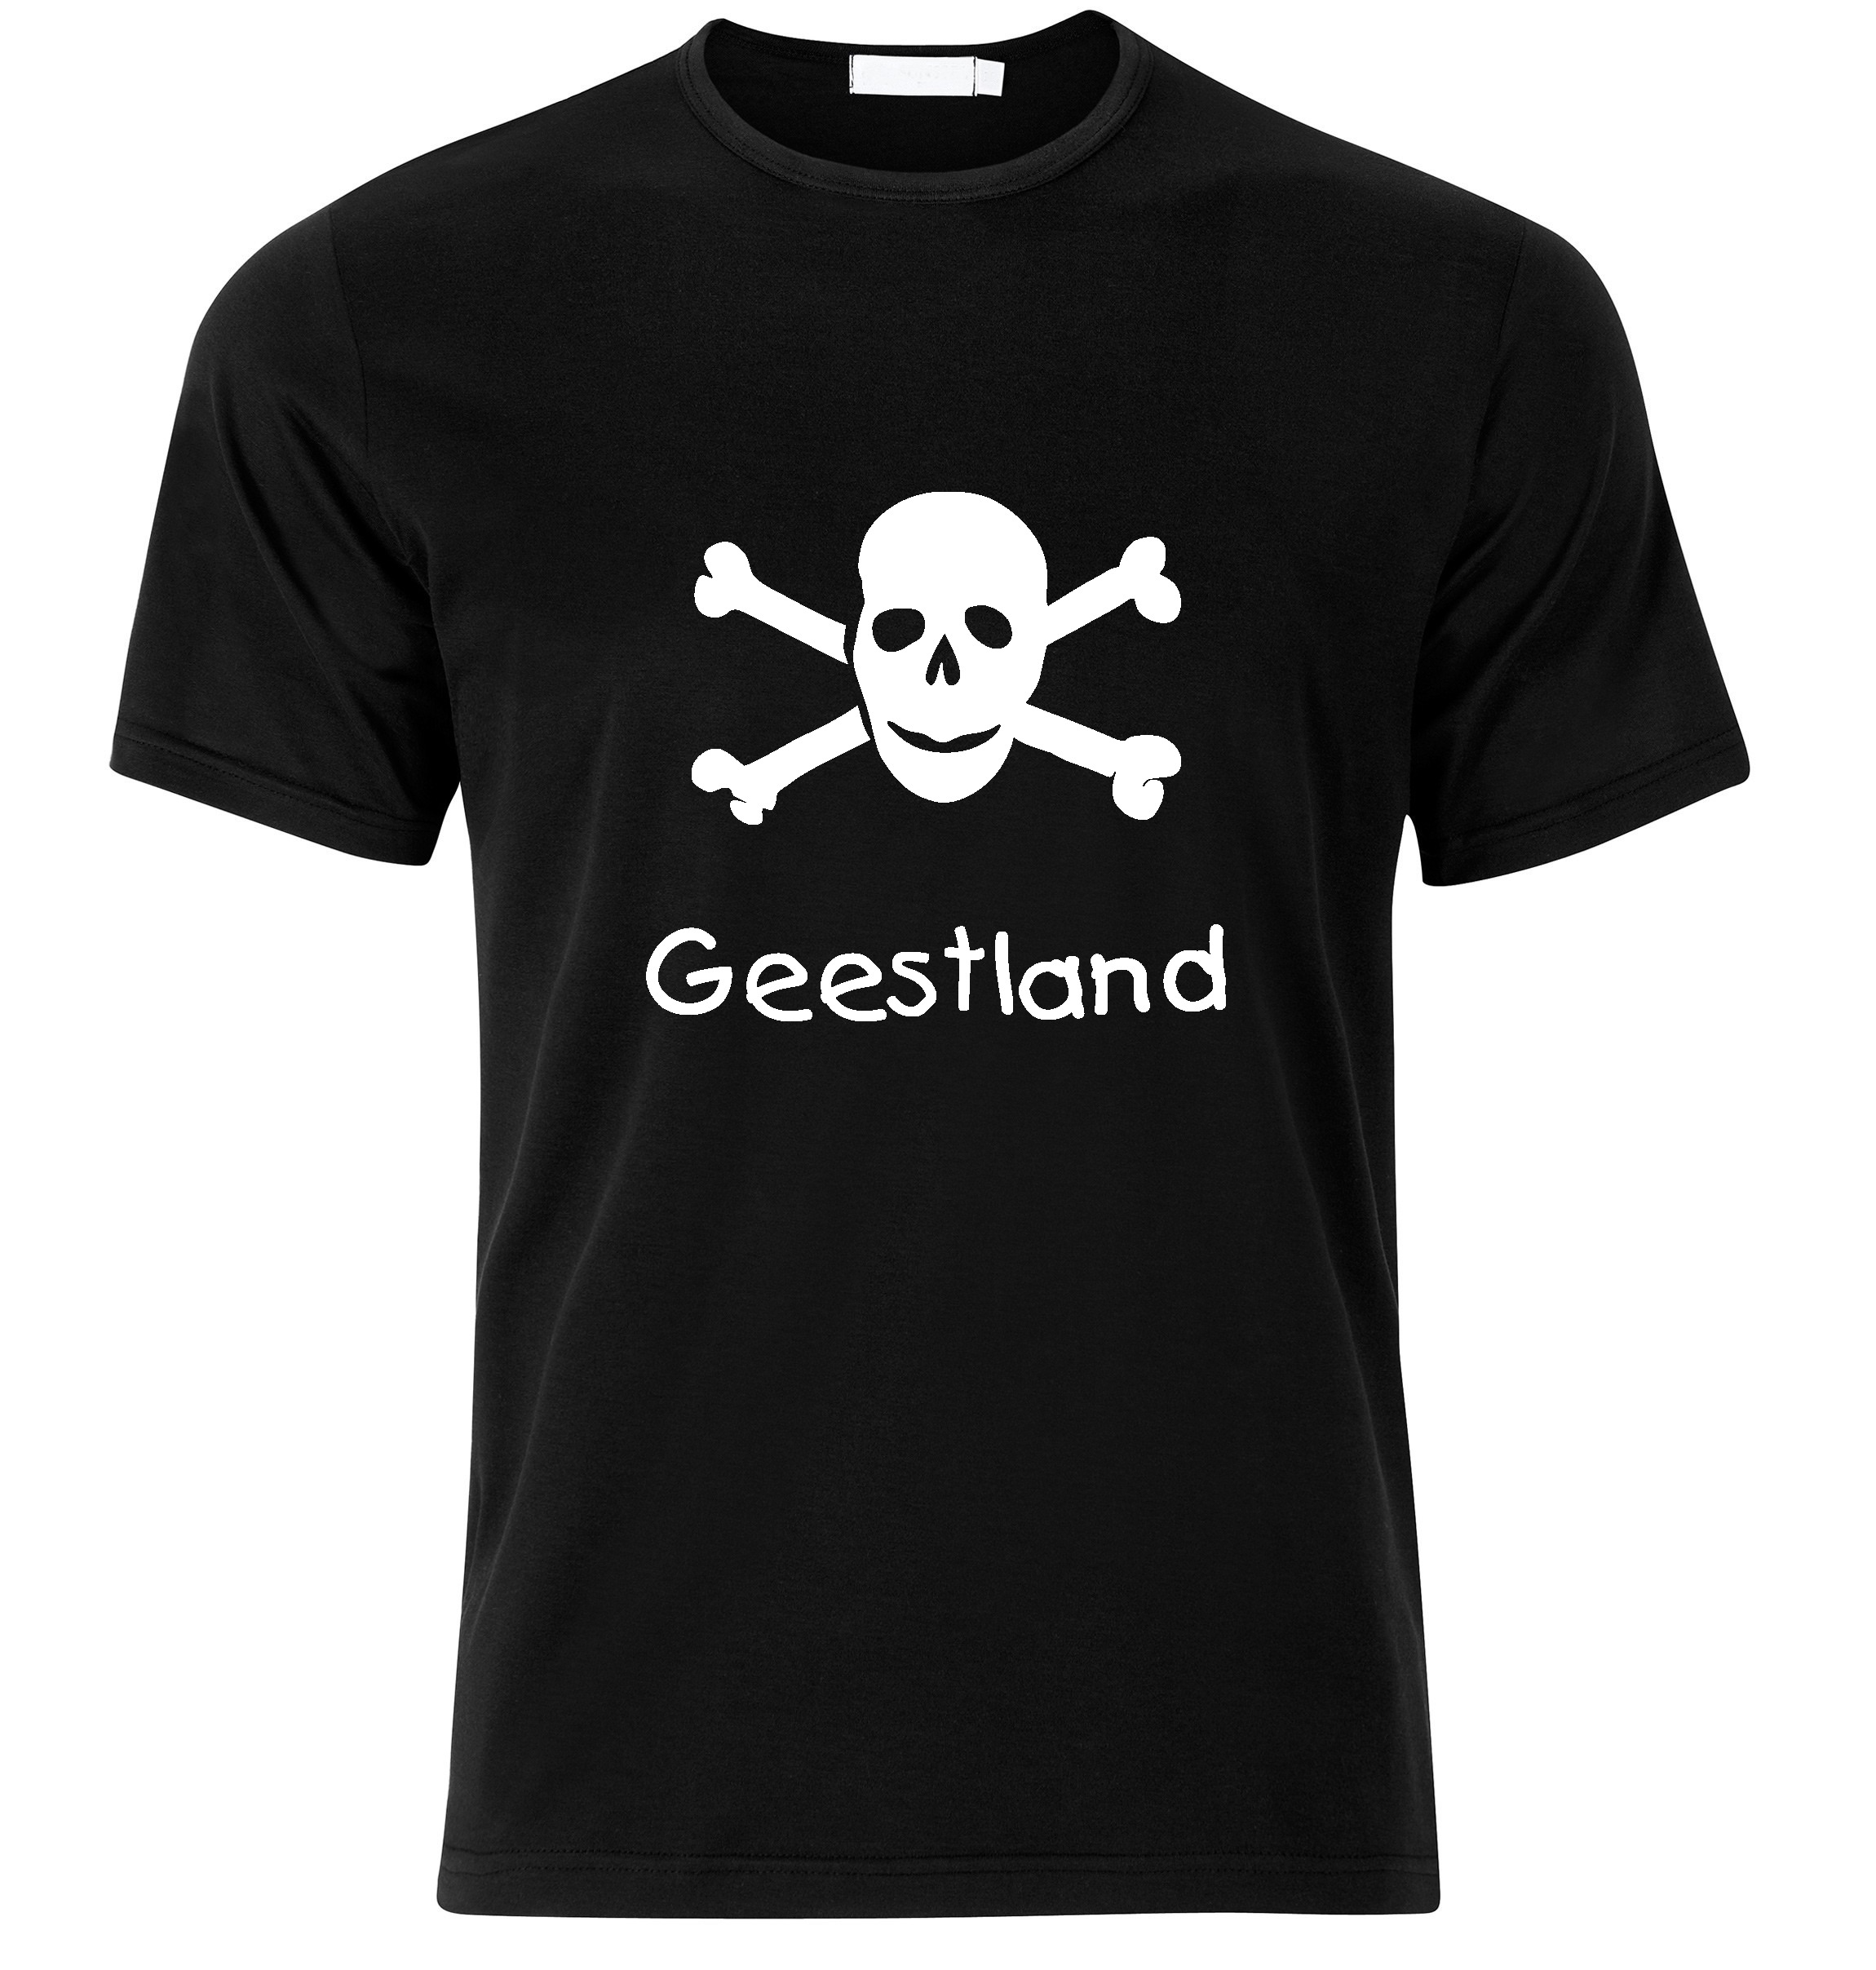 T-Shirt Geestland Jolly Roger, Totenkopf